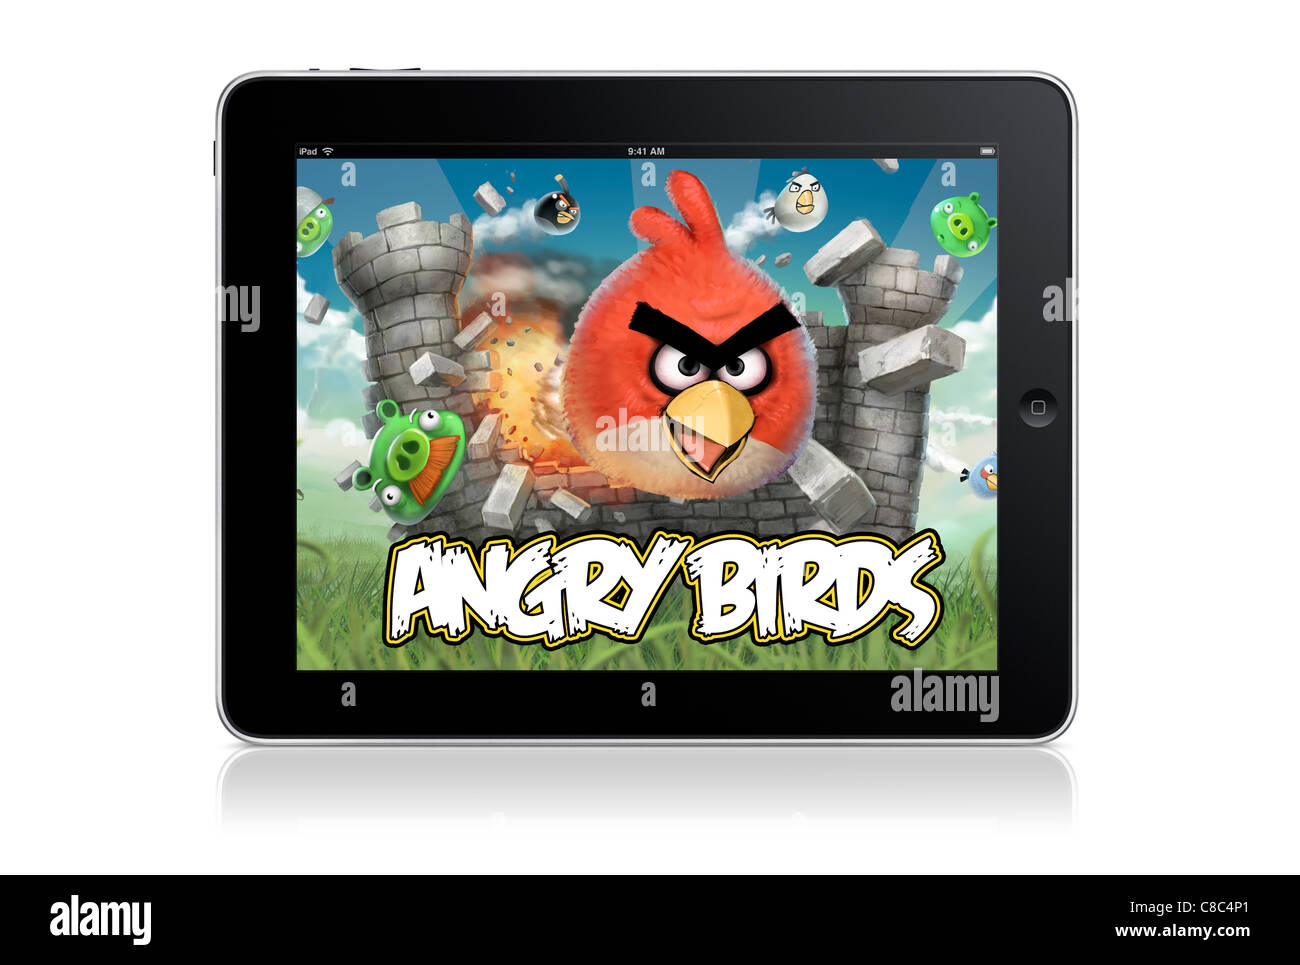 Juego Angry Birds en el ipad - blanco backrgound Foto de stock